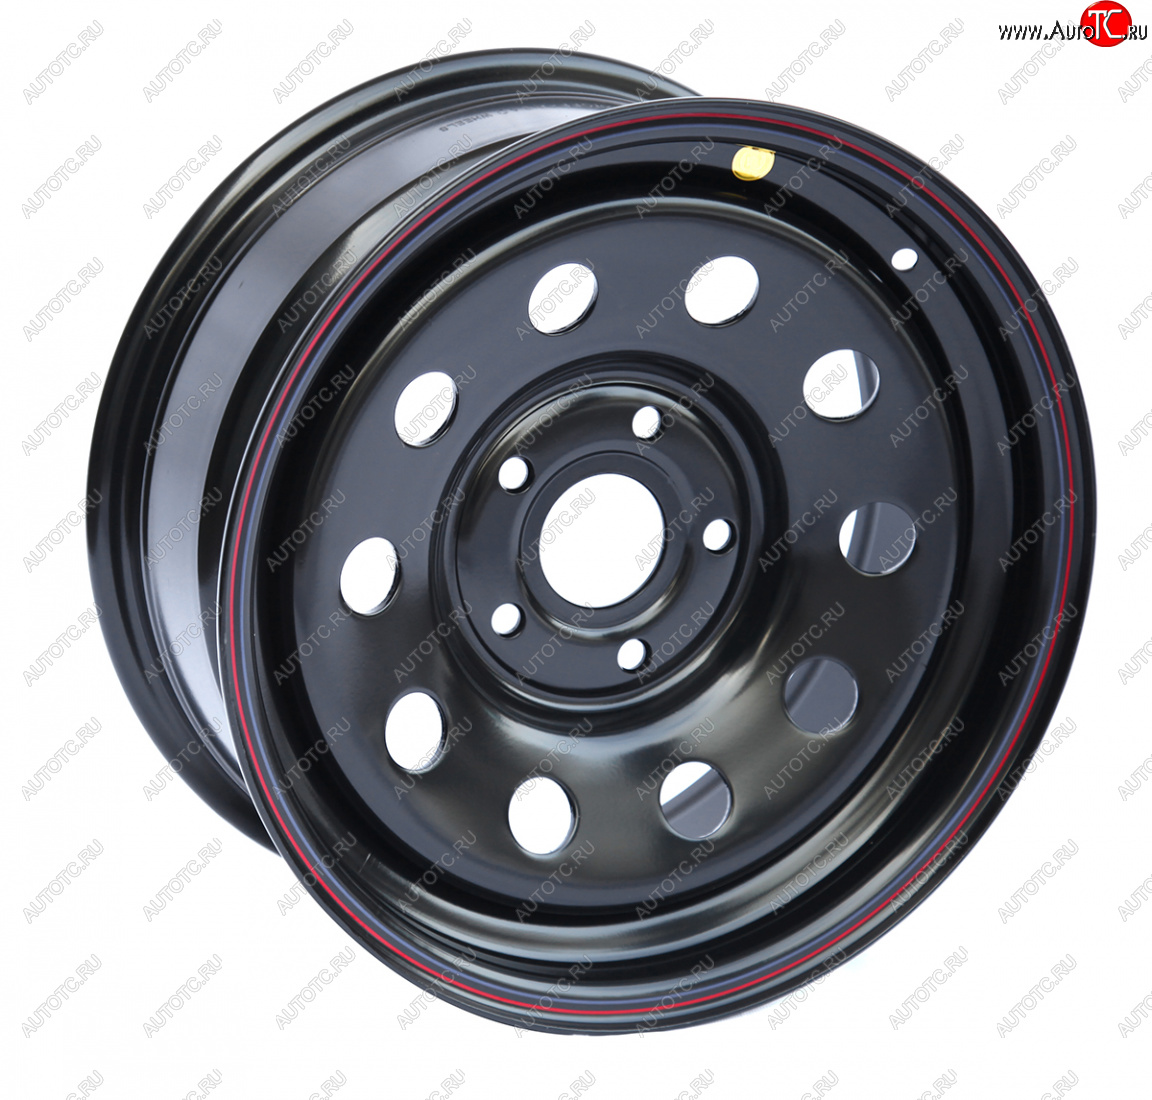 5 299 р. Штампованый диск OFF-ROAD Wheels (усиленный, круг) 7.0x16  BMW 5 серия ( E34,  E39,  E60,  E61) - 7 серия  E38 (Цвет: черный)